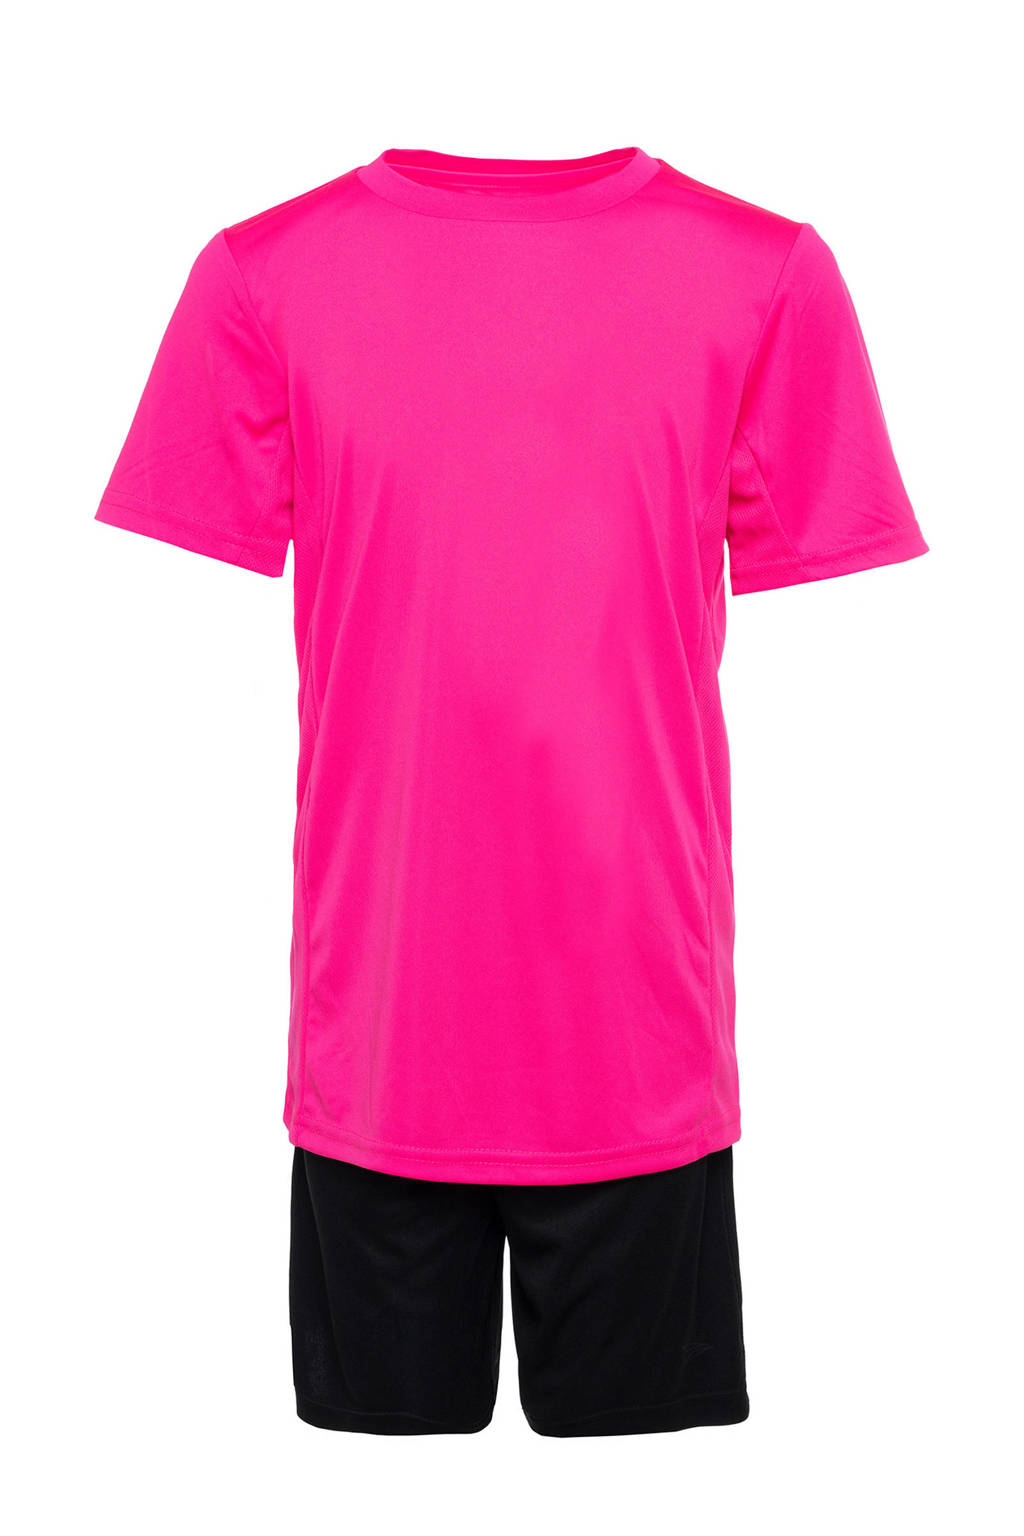 Scapino Dutchy   sportset roze/zwart, Roze/zwart